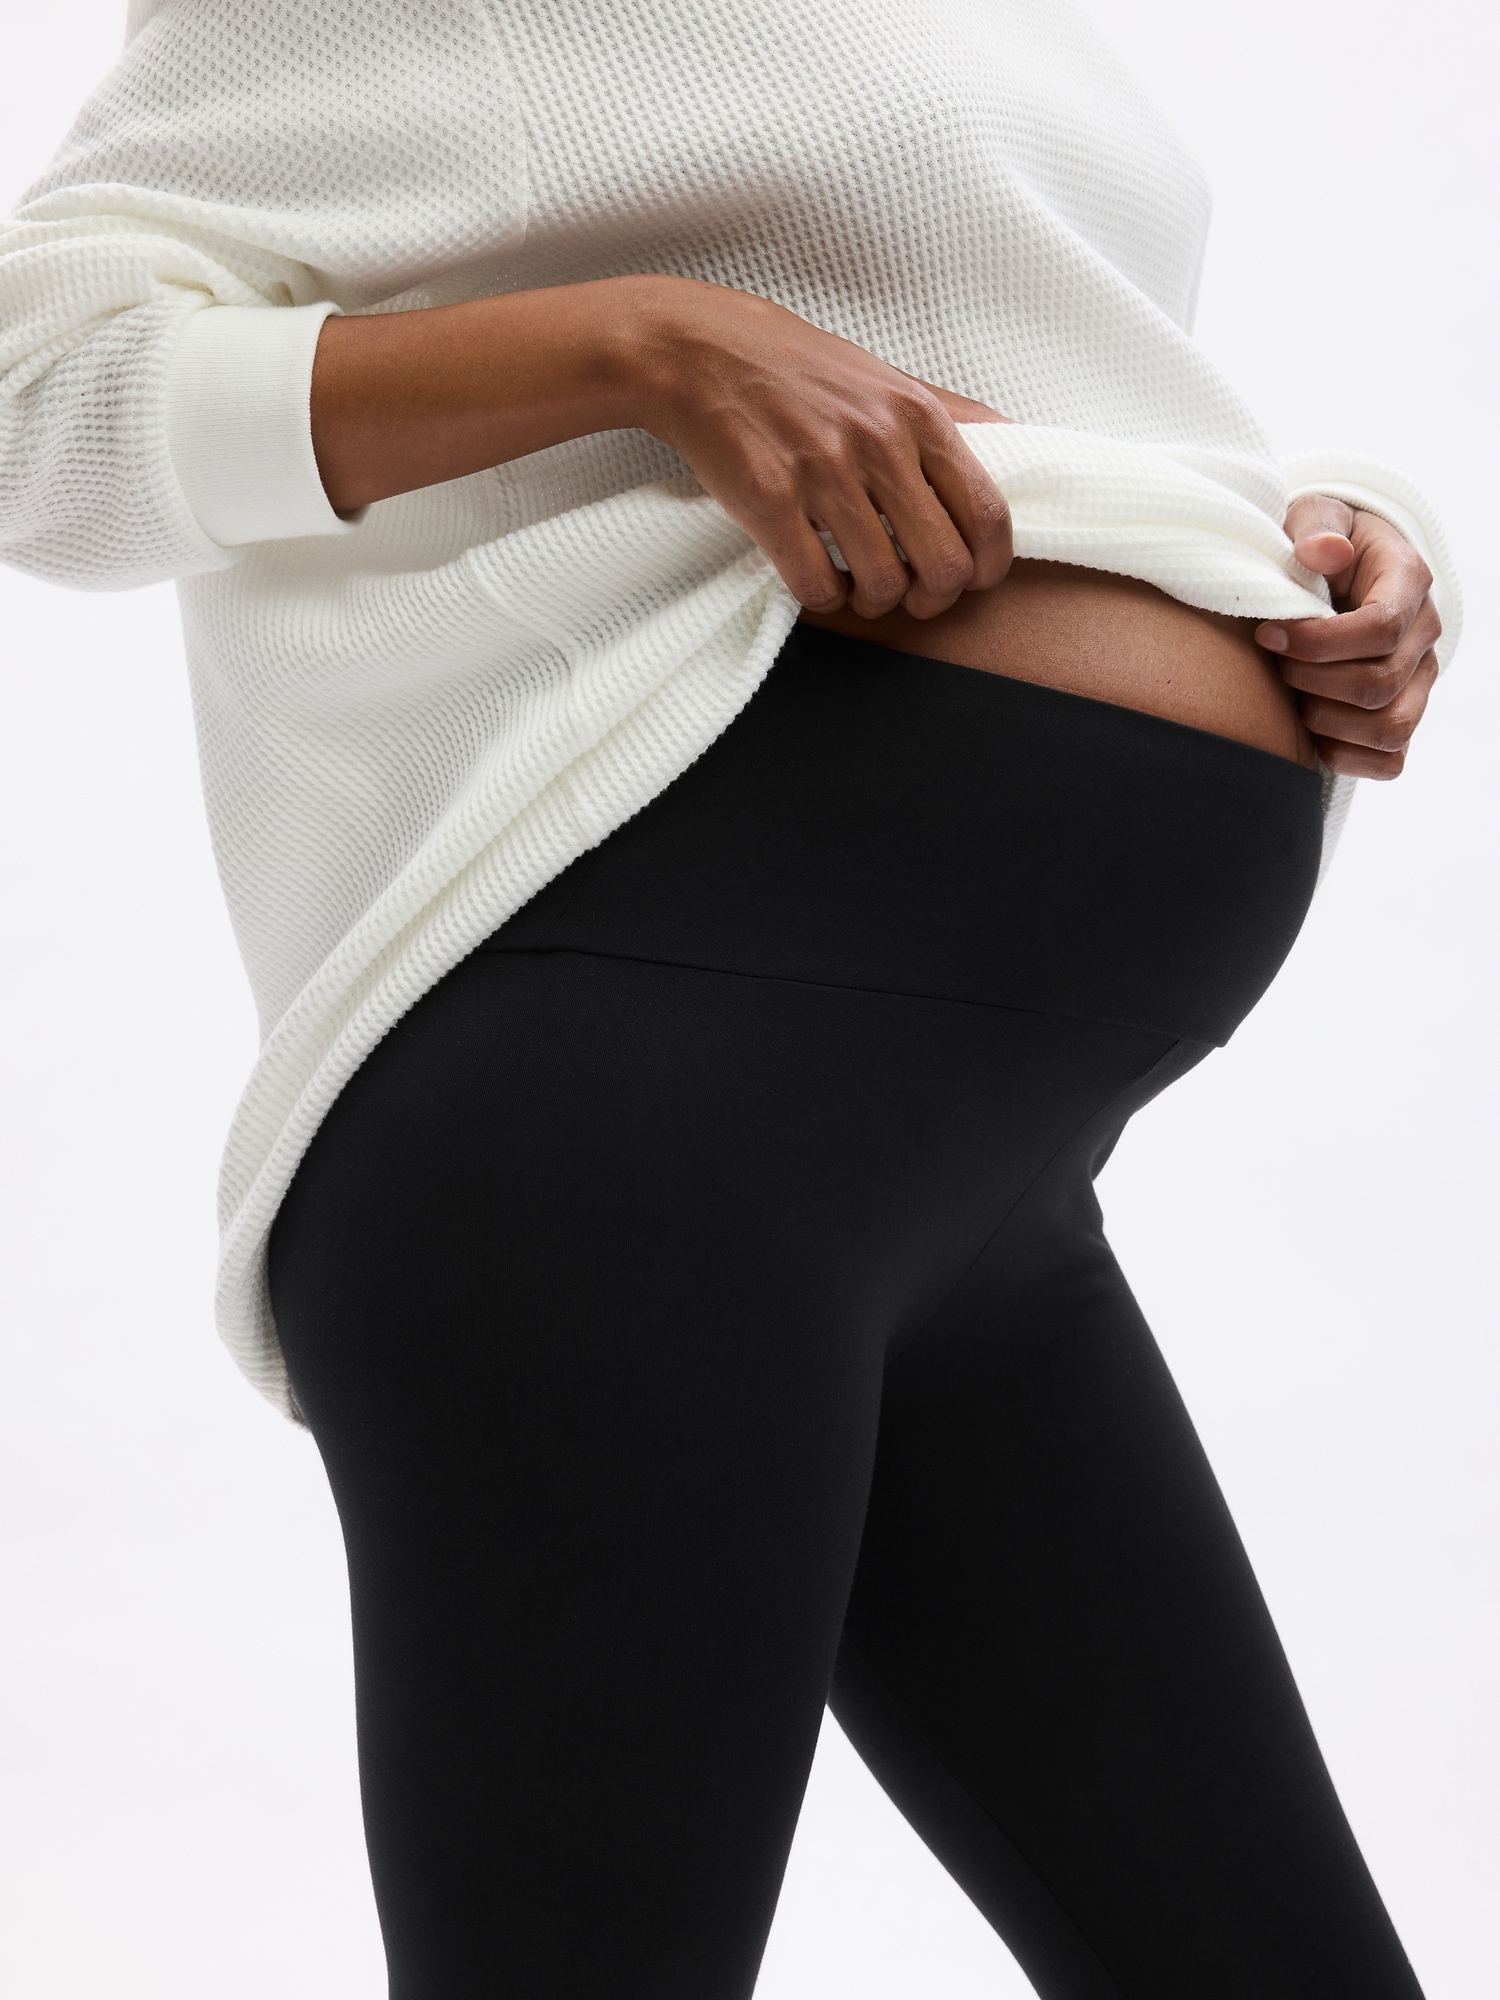 GAP Maternity Pure Body Capri Leggings | Gap maternity, Capri leggings,  Leggings shop